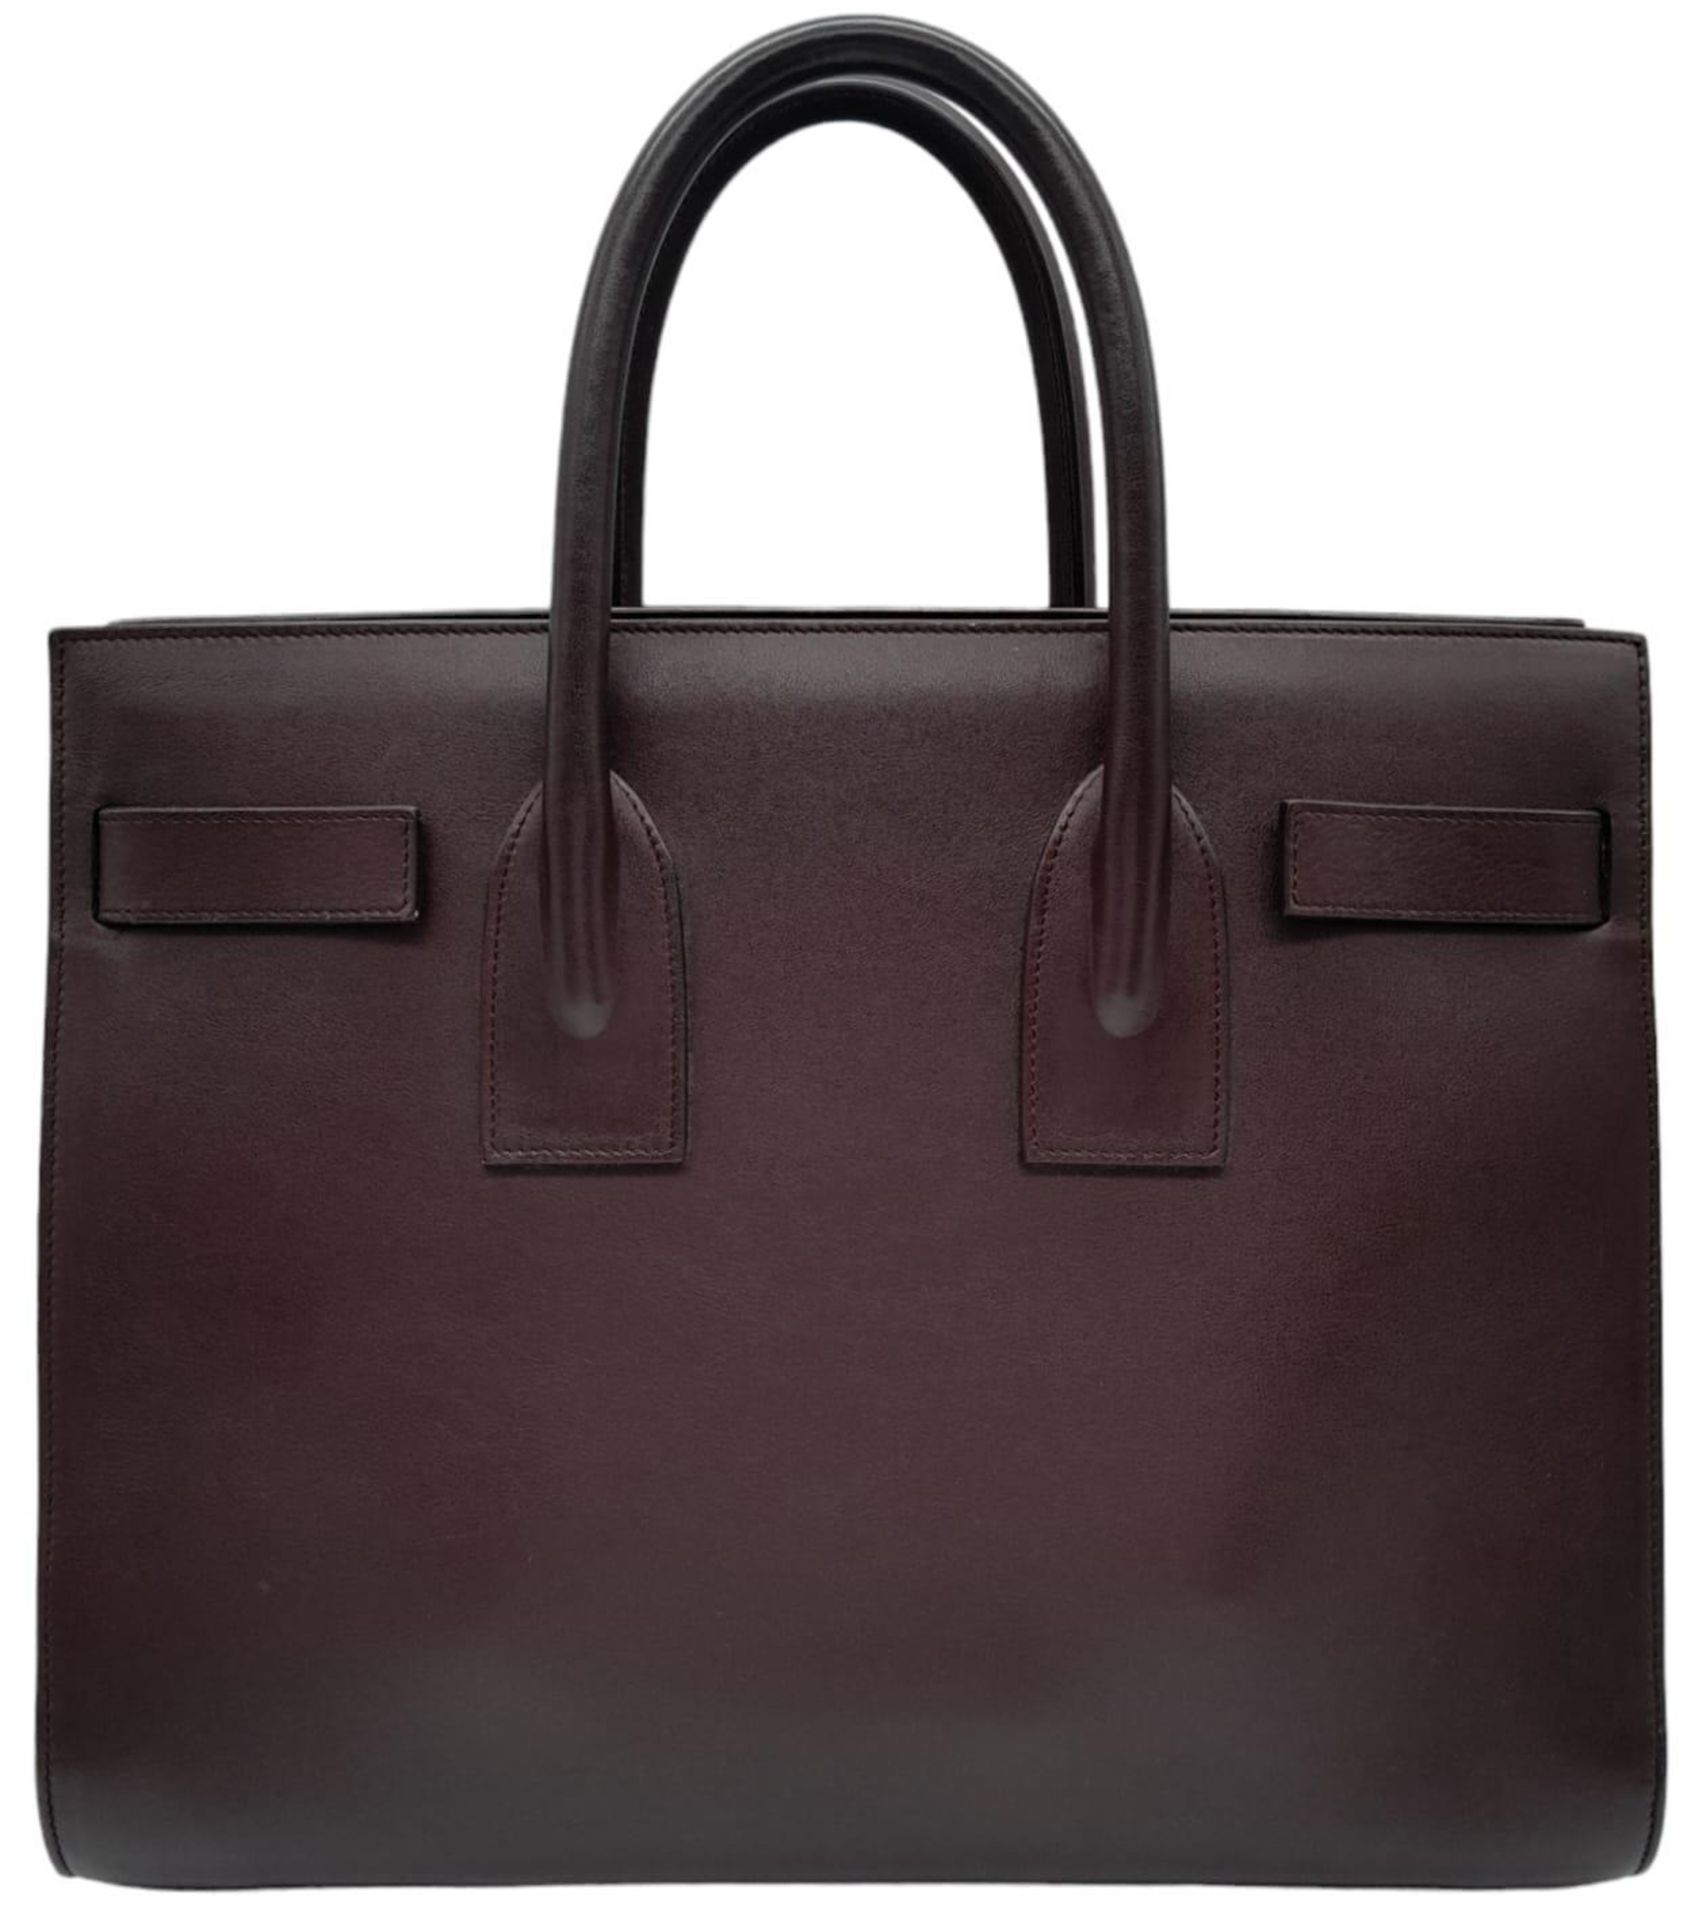 A Saint Laurent Sac De Jour Burgundy Handbag. Leather Exterior, Gold Tone Hardware, Double Handle in - Bild 2 aus 9